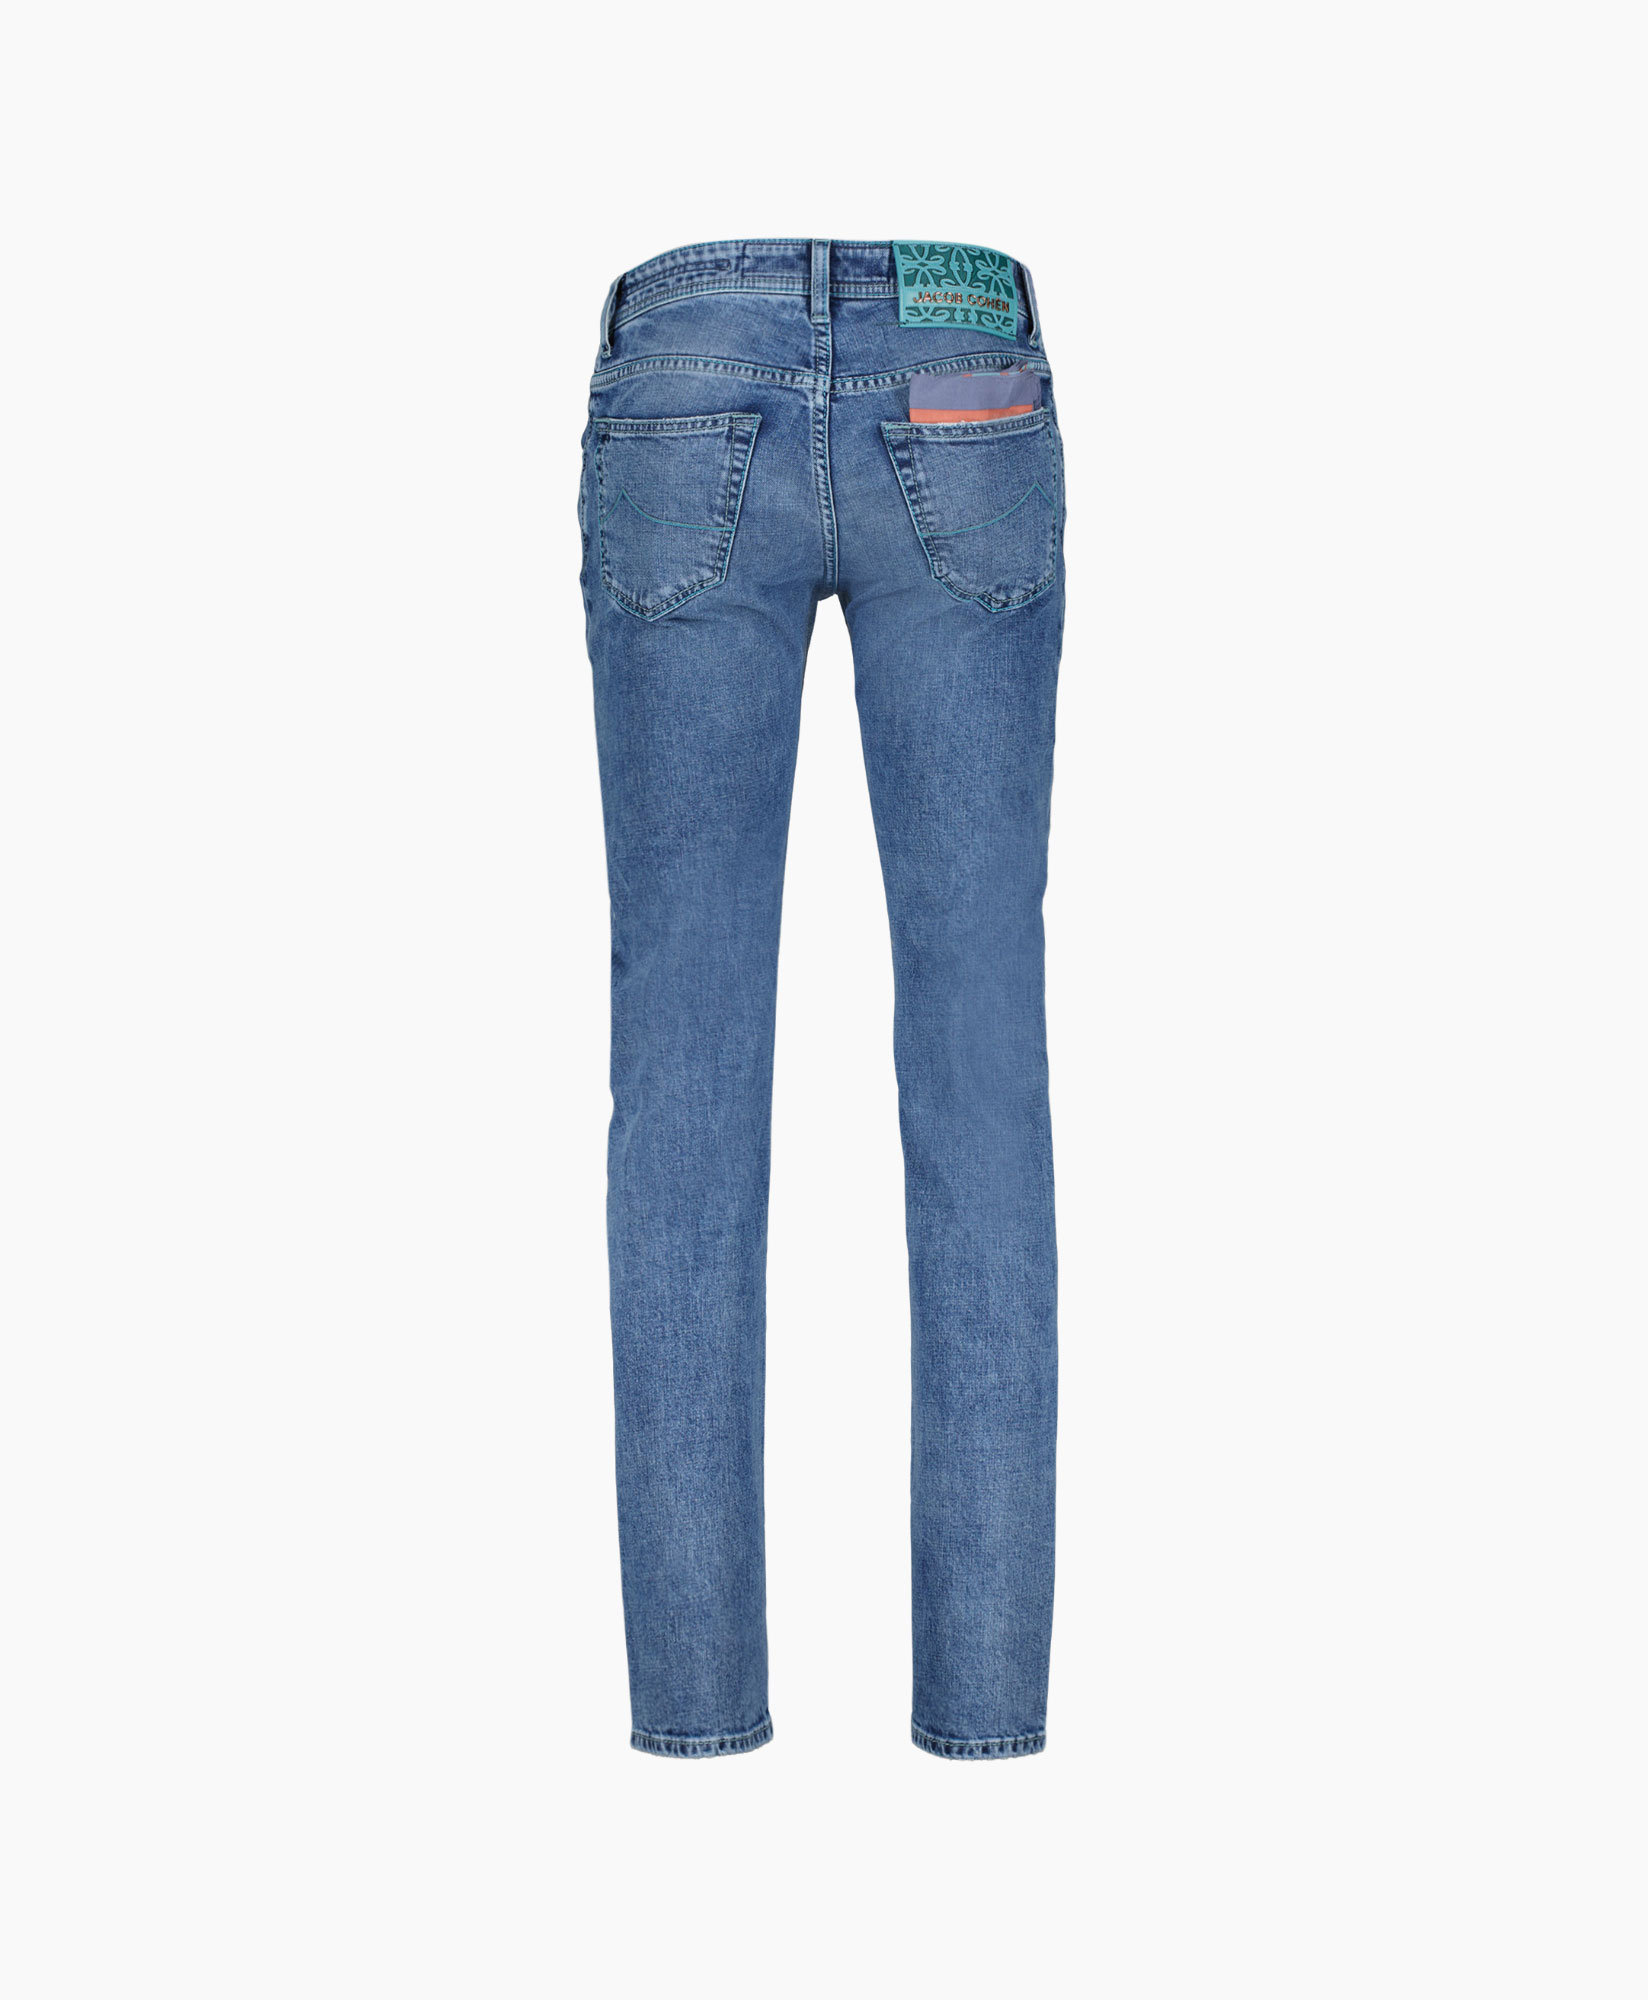 Jacob Cohen Jeans Slim Fit Nick - Zzju0435 Diversen